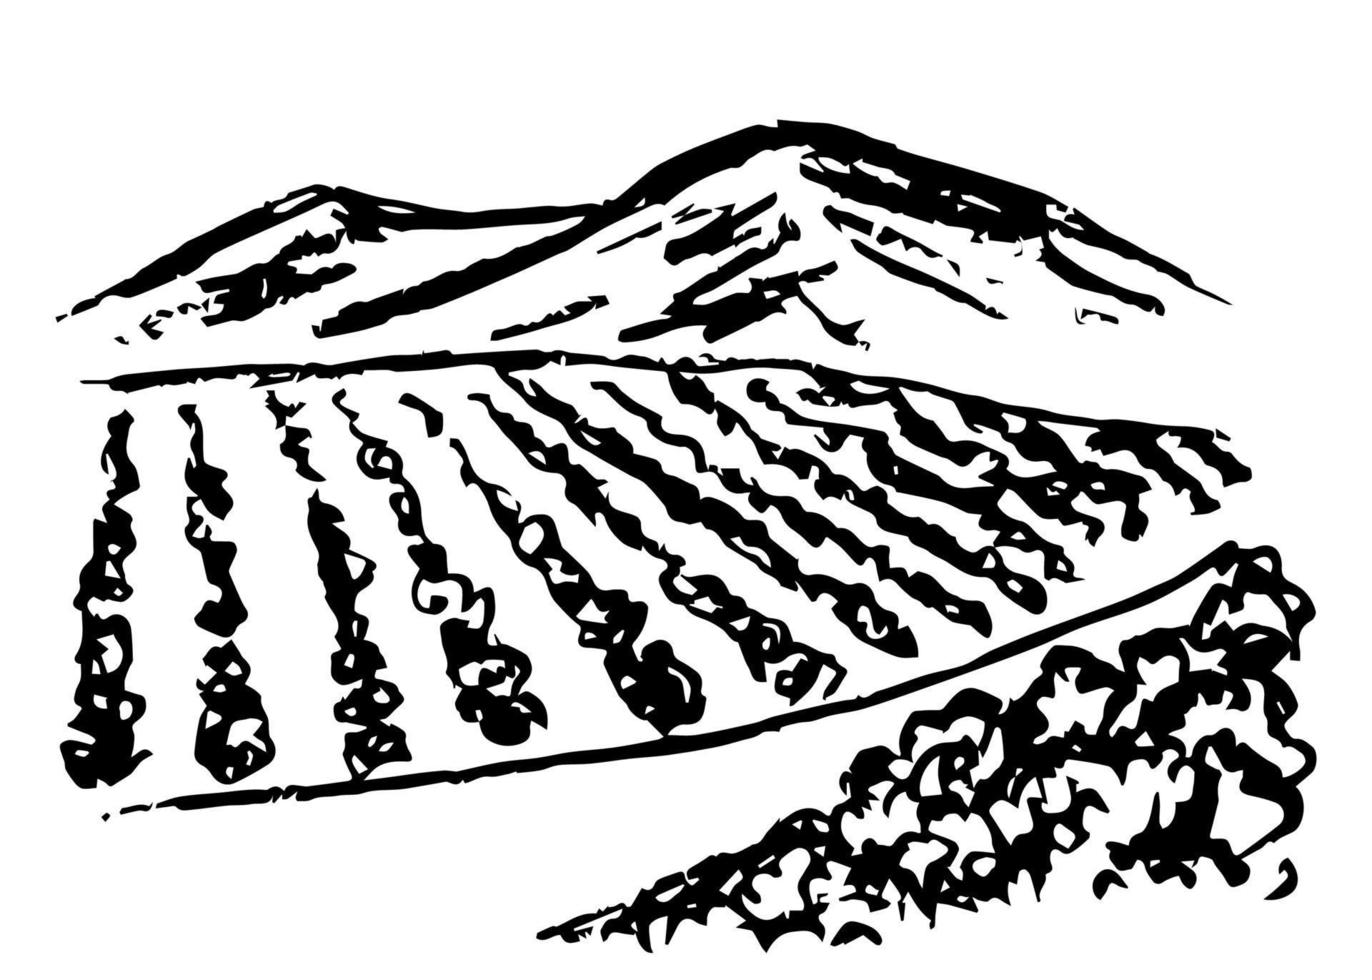 dibujo a lápiz de carbón simple vector dibujado a mano. paisaje de viñedos, hileras de arbustos de uva, perspectiva, camino rural, contornos de montañas en el horizonte. estilo de grabado, impresión de etiquetas, carta de vinos.